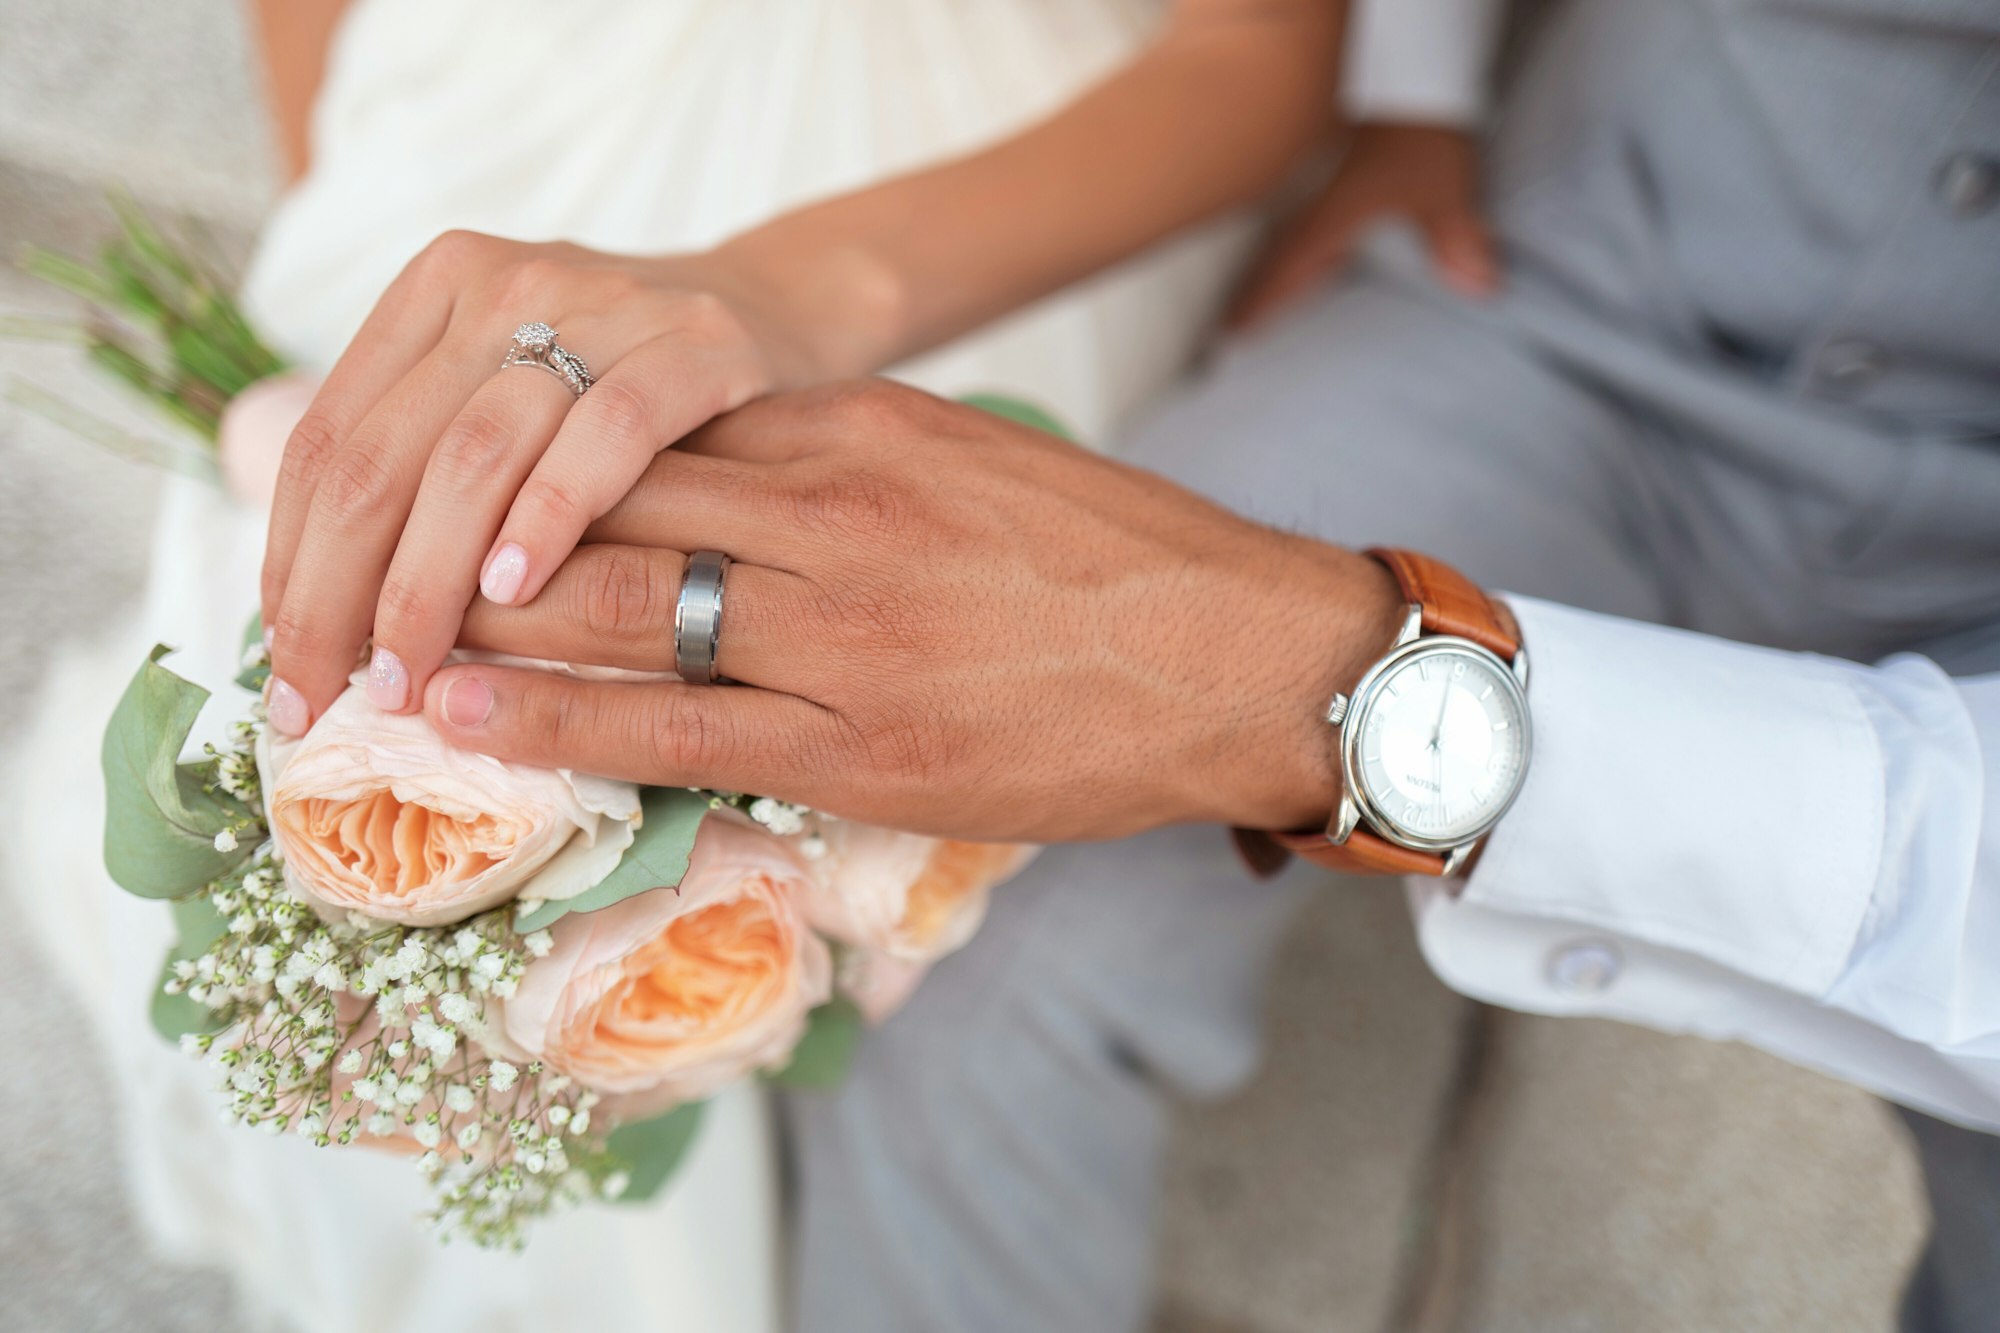 Matrimonio concordatario: cos’è e dove viene celebrato